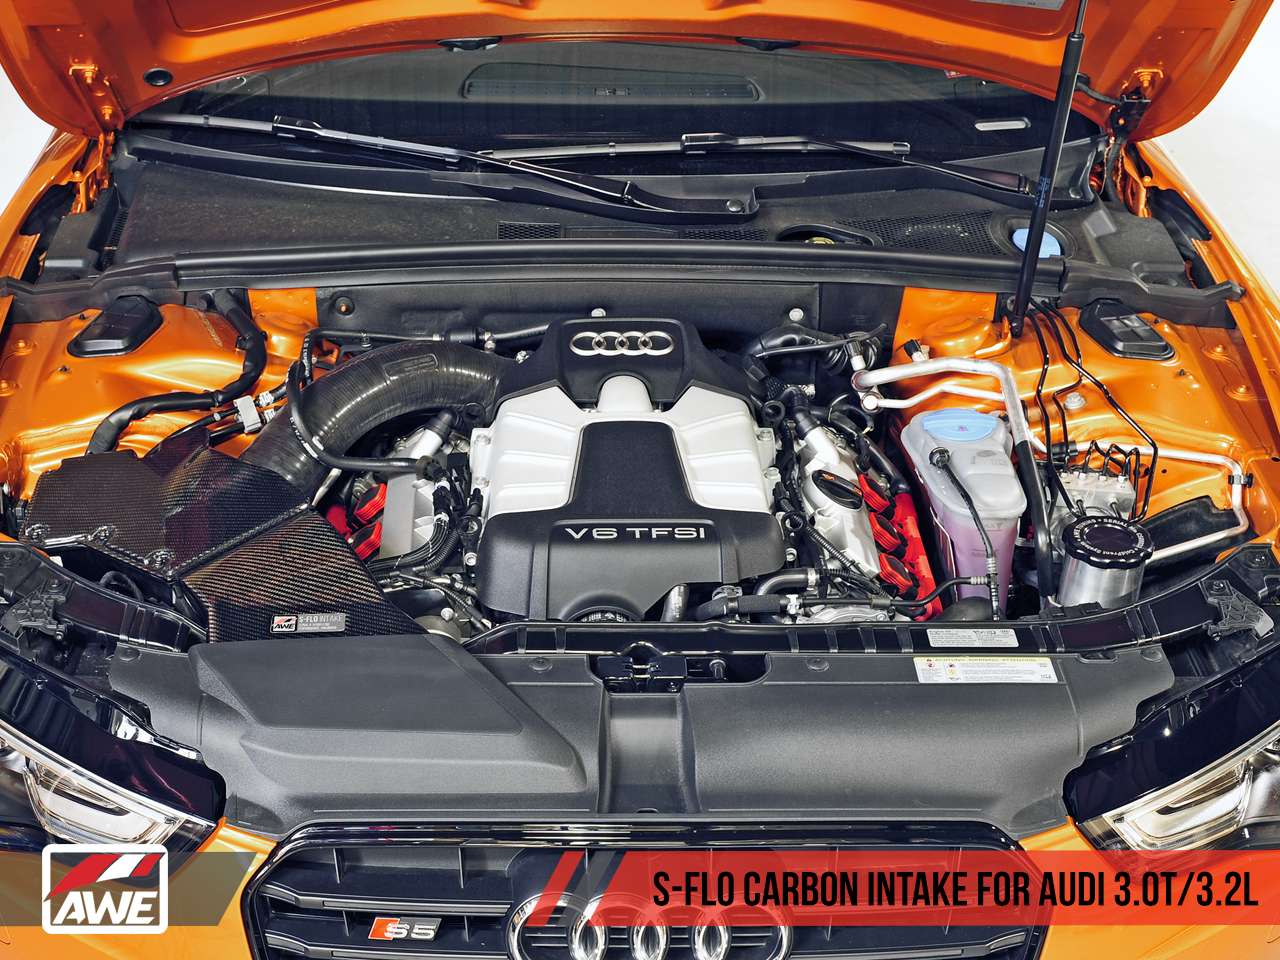 AWE S-FLO Carbon Intake for Audi B8.5 3.0T - 0